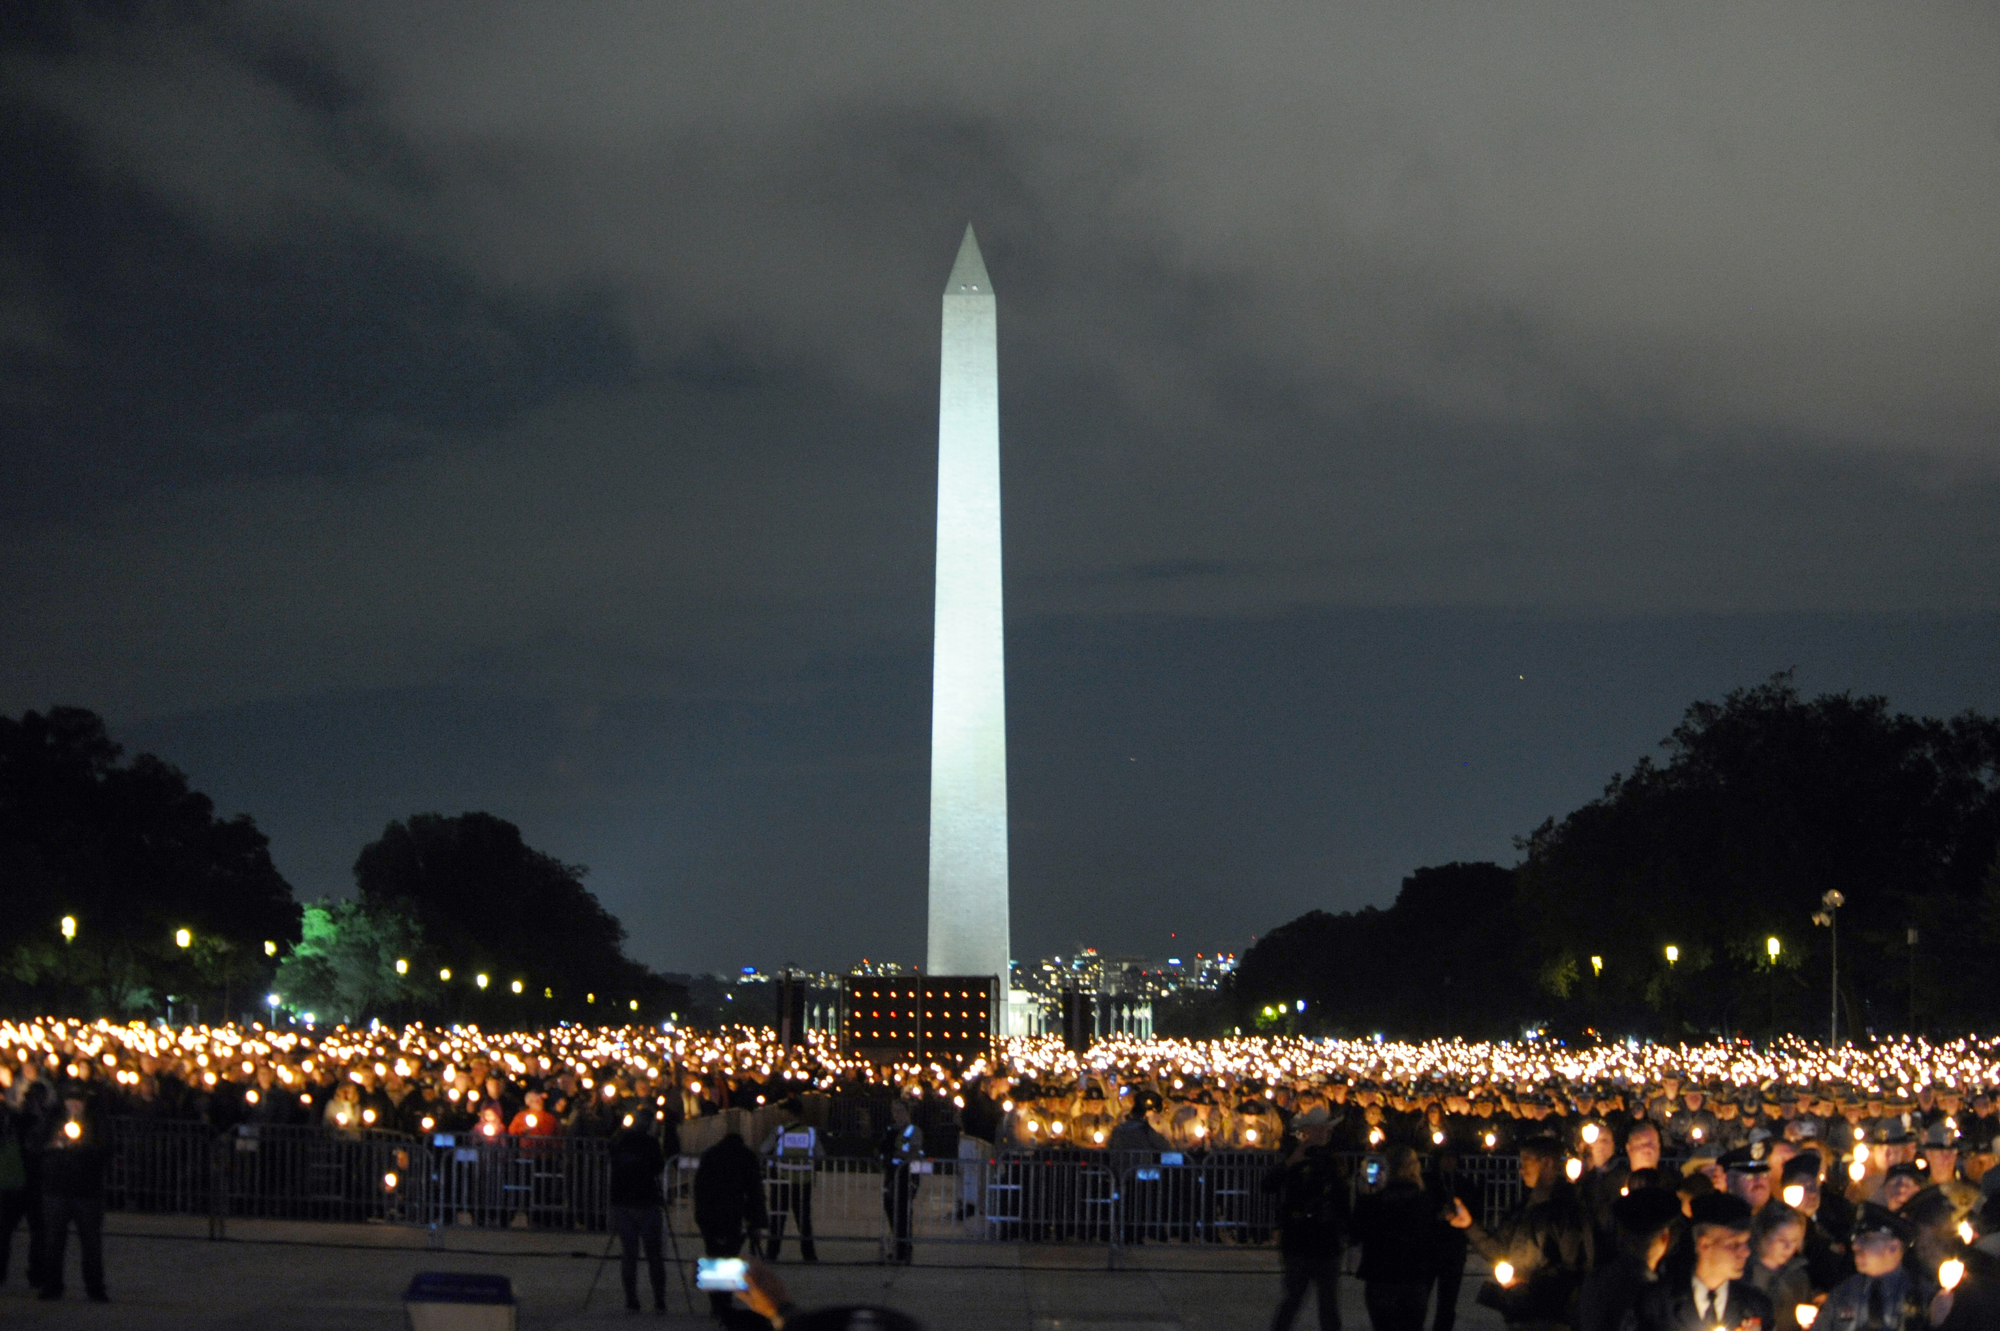 National Police Week 2019: Candlelight Vigil with Washington Monument